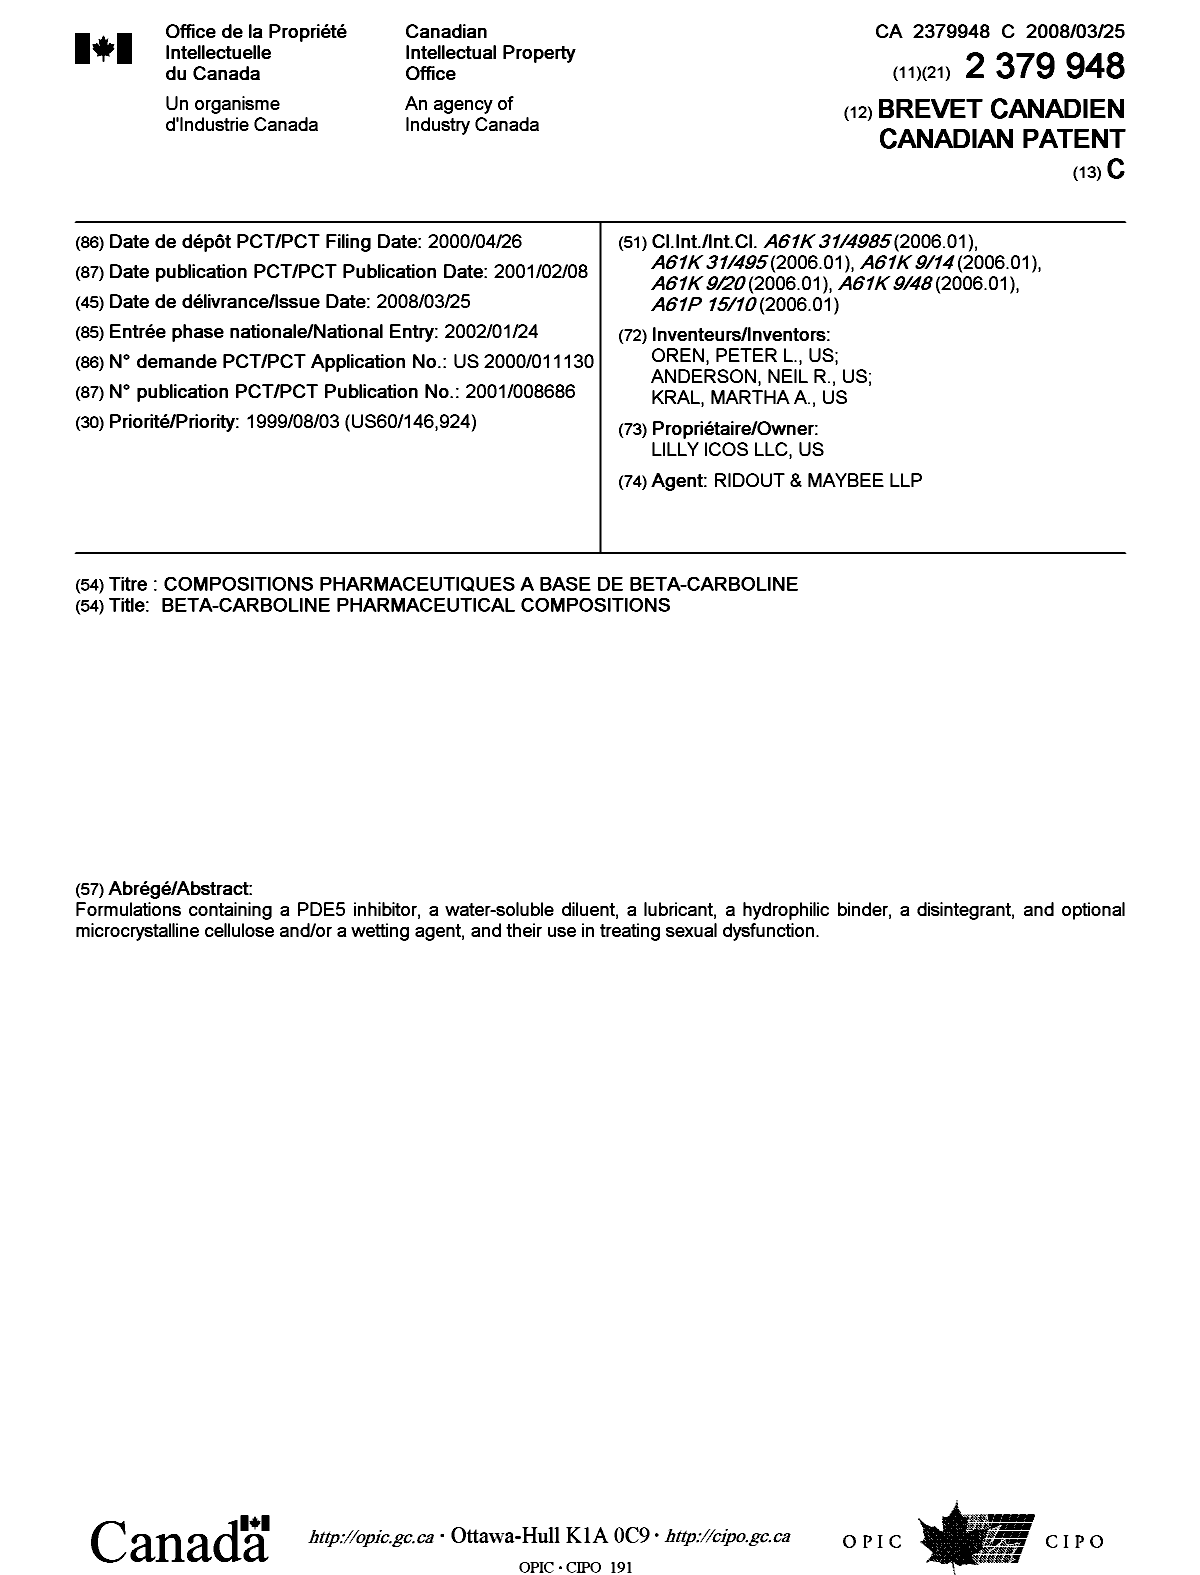 Document de brevet canadien 2379948. Page couverture 20071228. Image 1 de 1